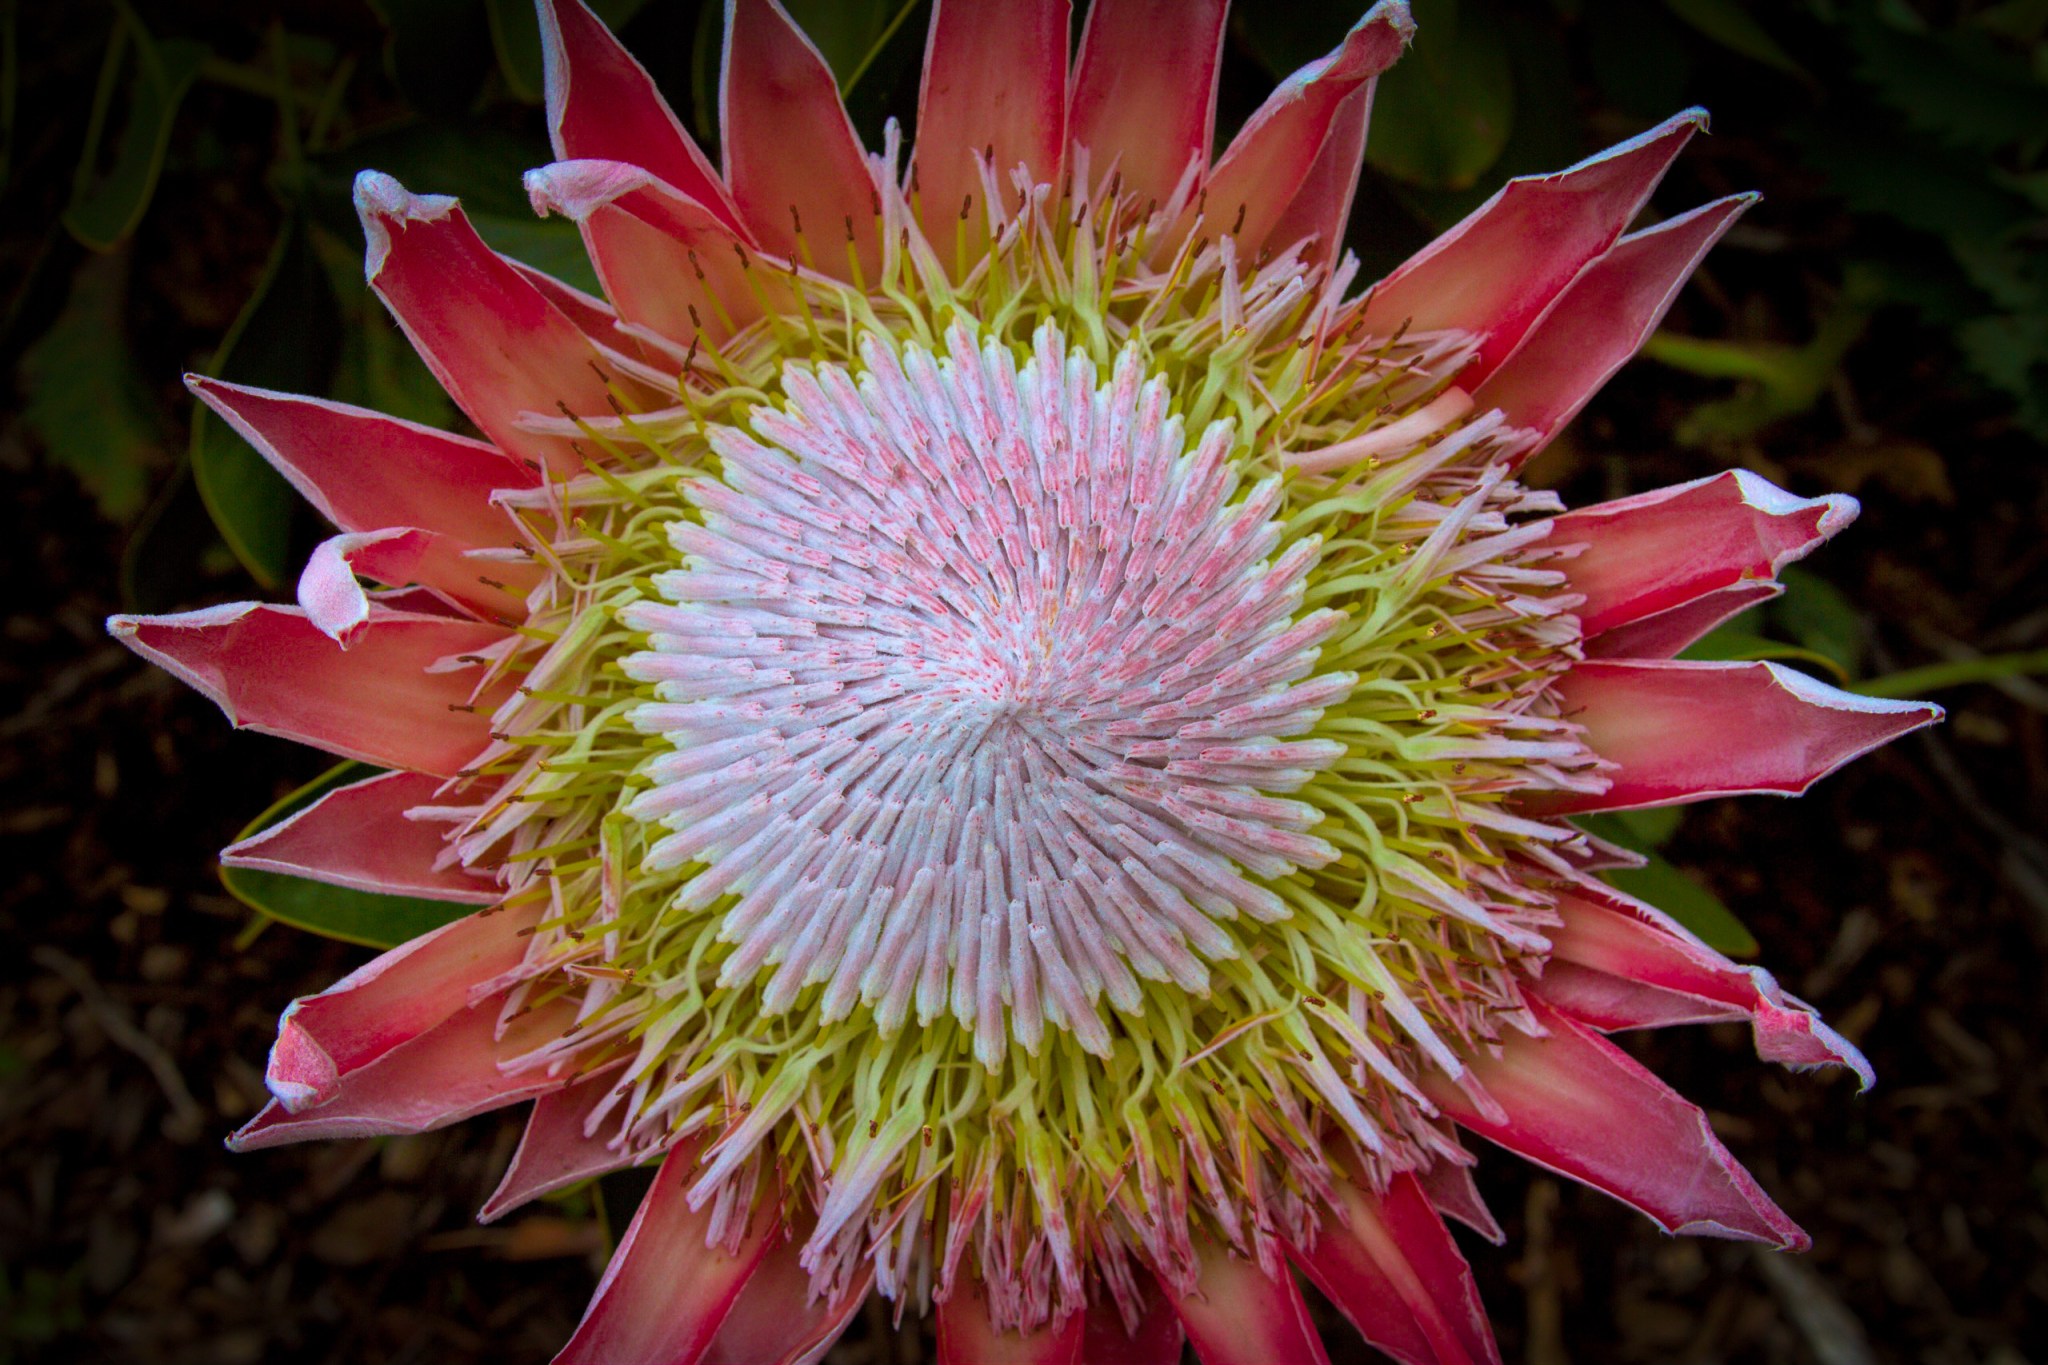 Bright magenta flower with pinkish center, dark background